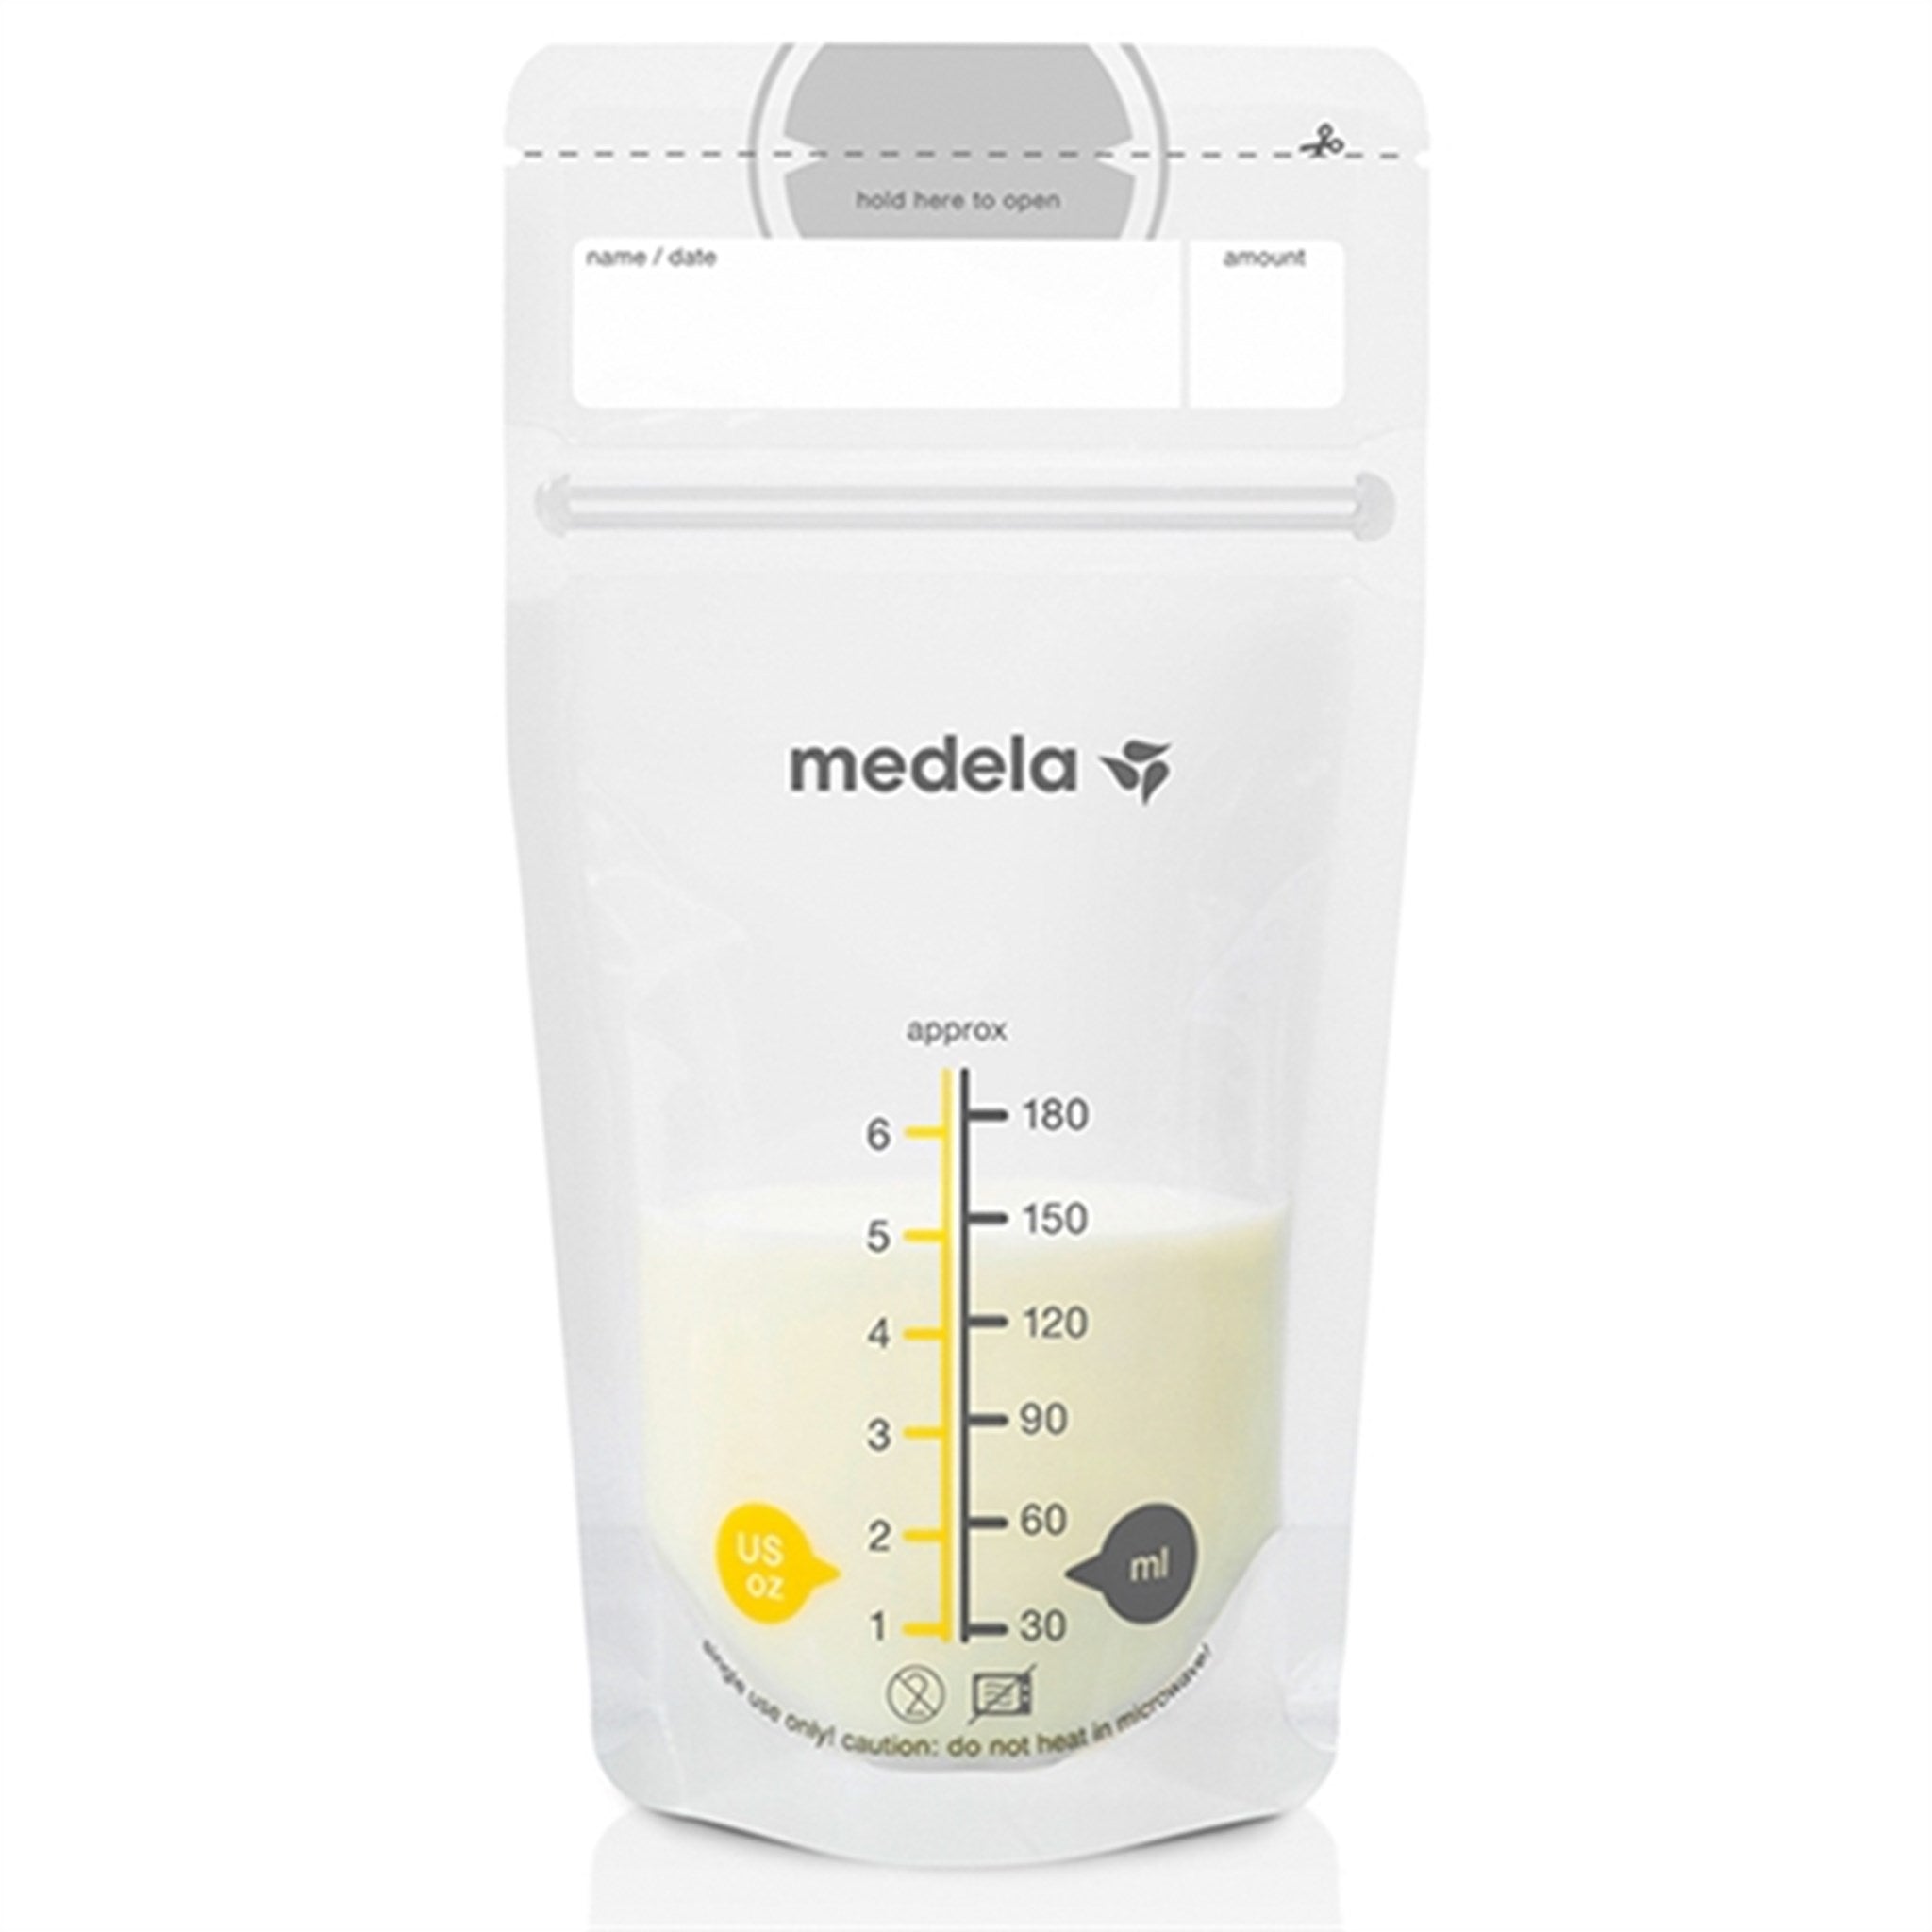 medela Storage Bag For Breast Milk 25 pcs